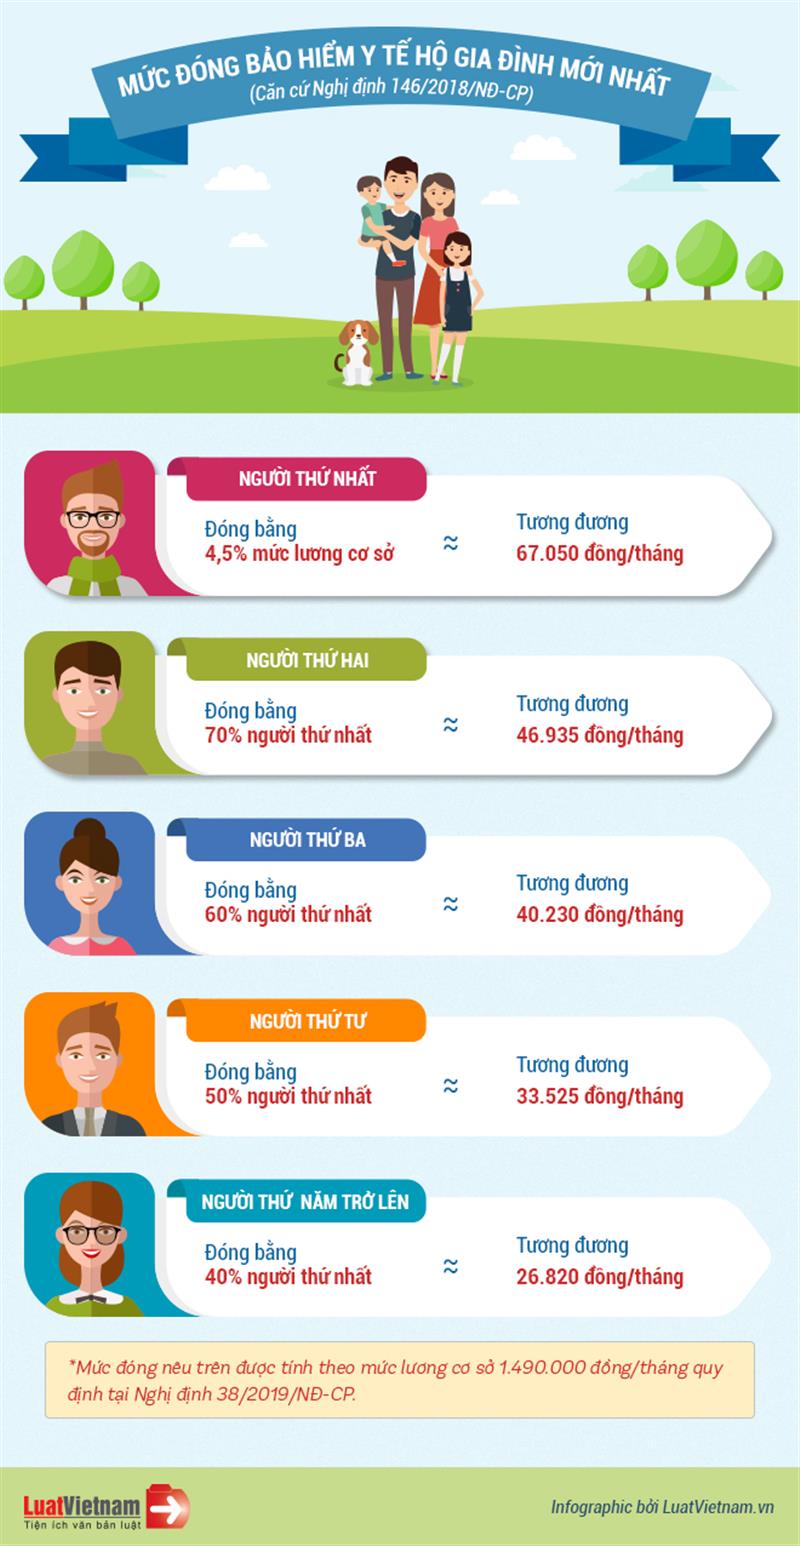 Infographic về mức đóng BHYT hộ gia đình hiện nay, để cập nhật các chính sách bảo hiểm y tế mới nhất (Nguồn: luatvietnam.vn)